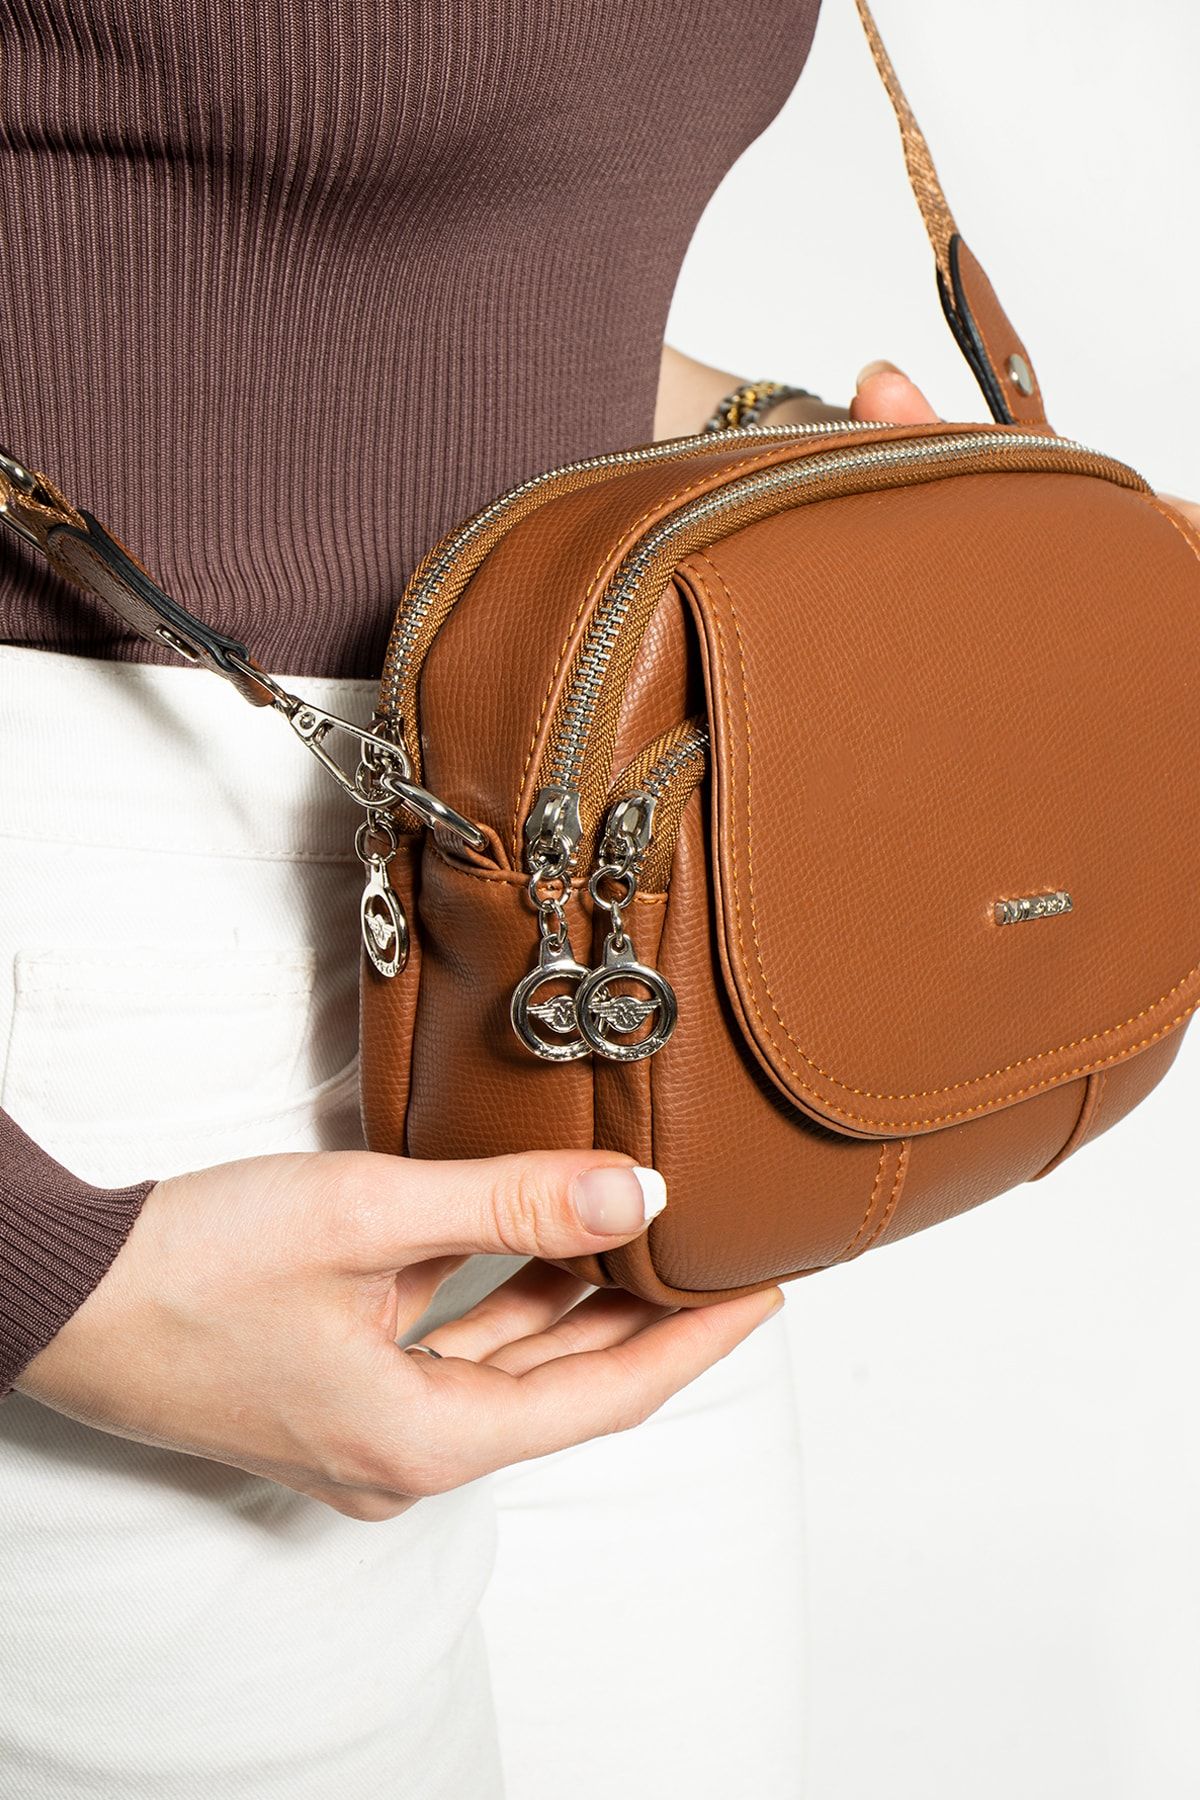 Calvin Klein Bags, Handbags & Purses | CK Bag | Very.co.uk